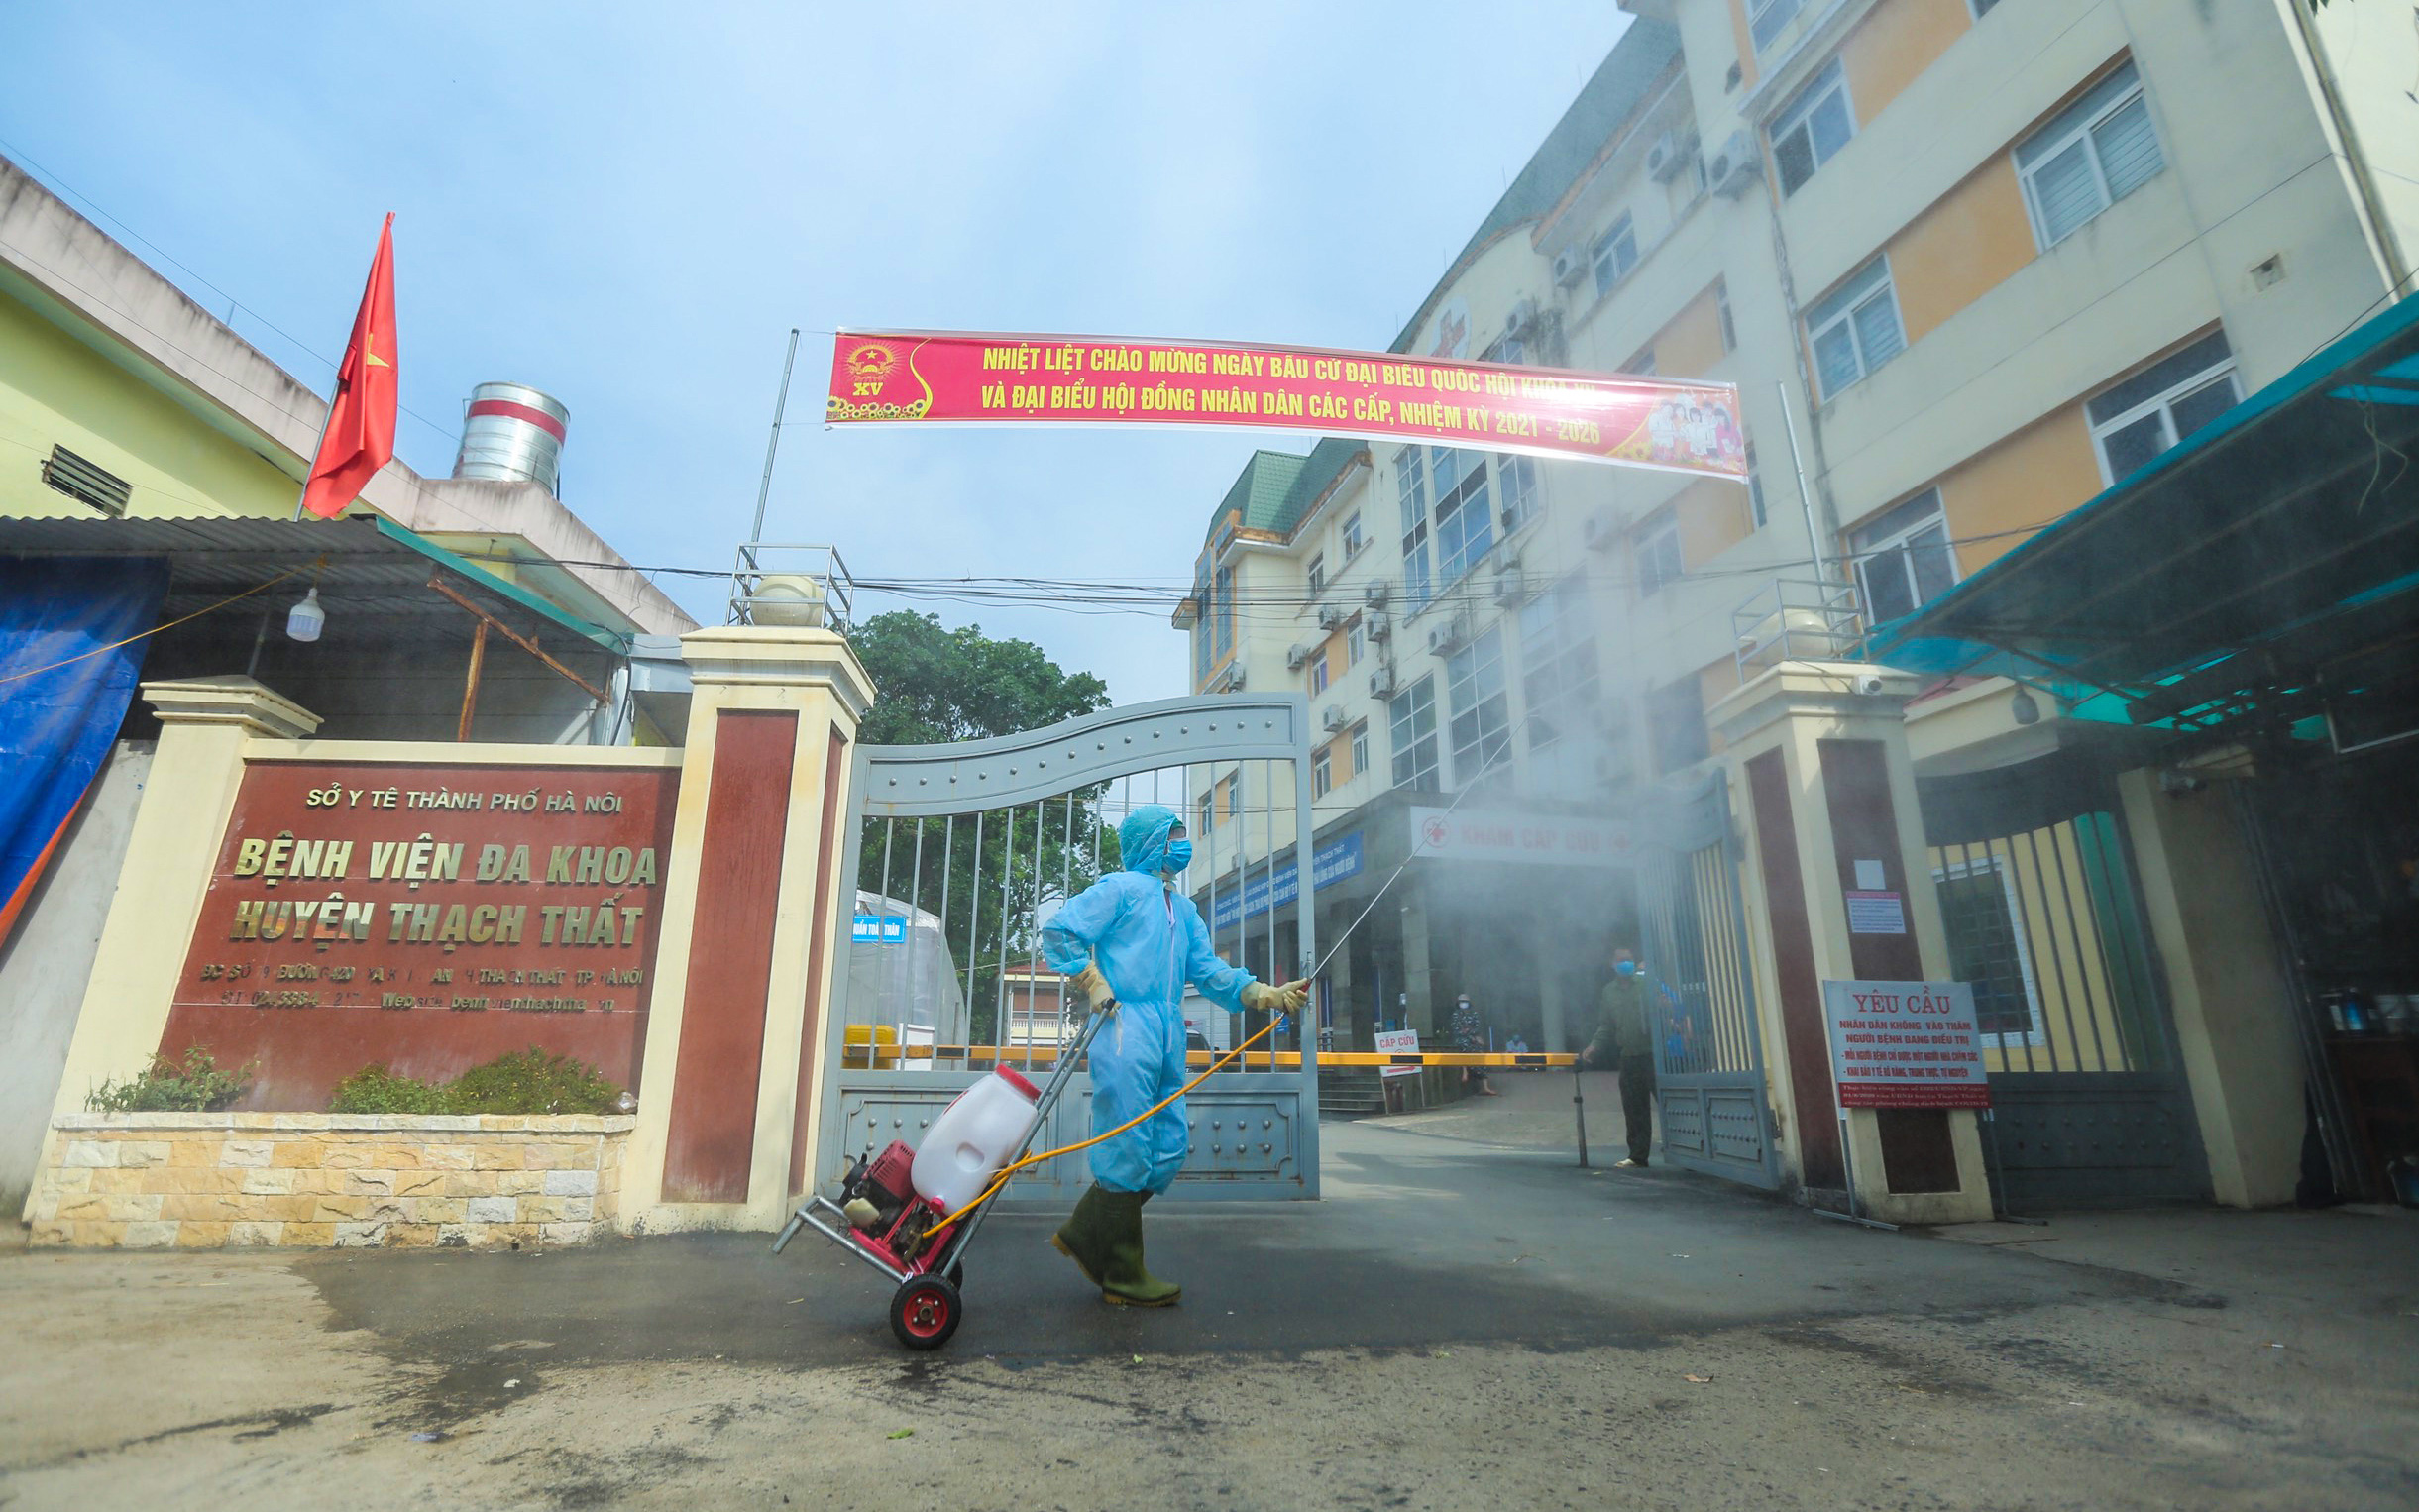 Hà Nội: Bệnh viện Đa khoa Thạch Thất ngừng tiếp bệnh nhân do có ca nhiễm Covid-19 mới